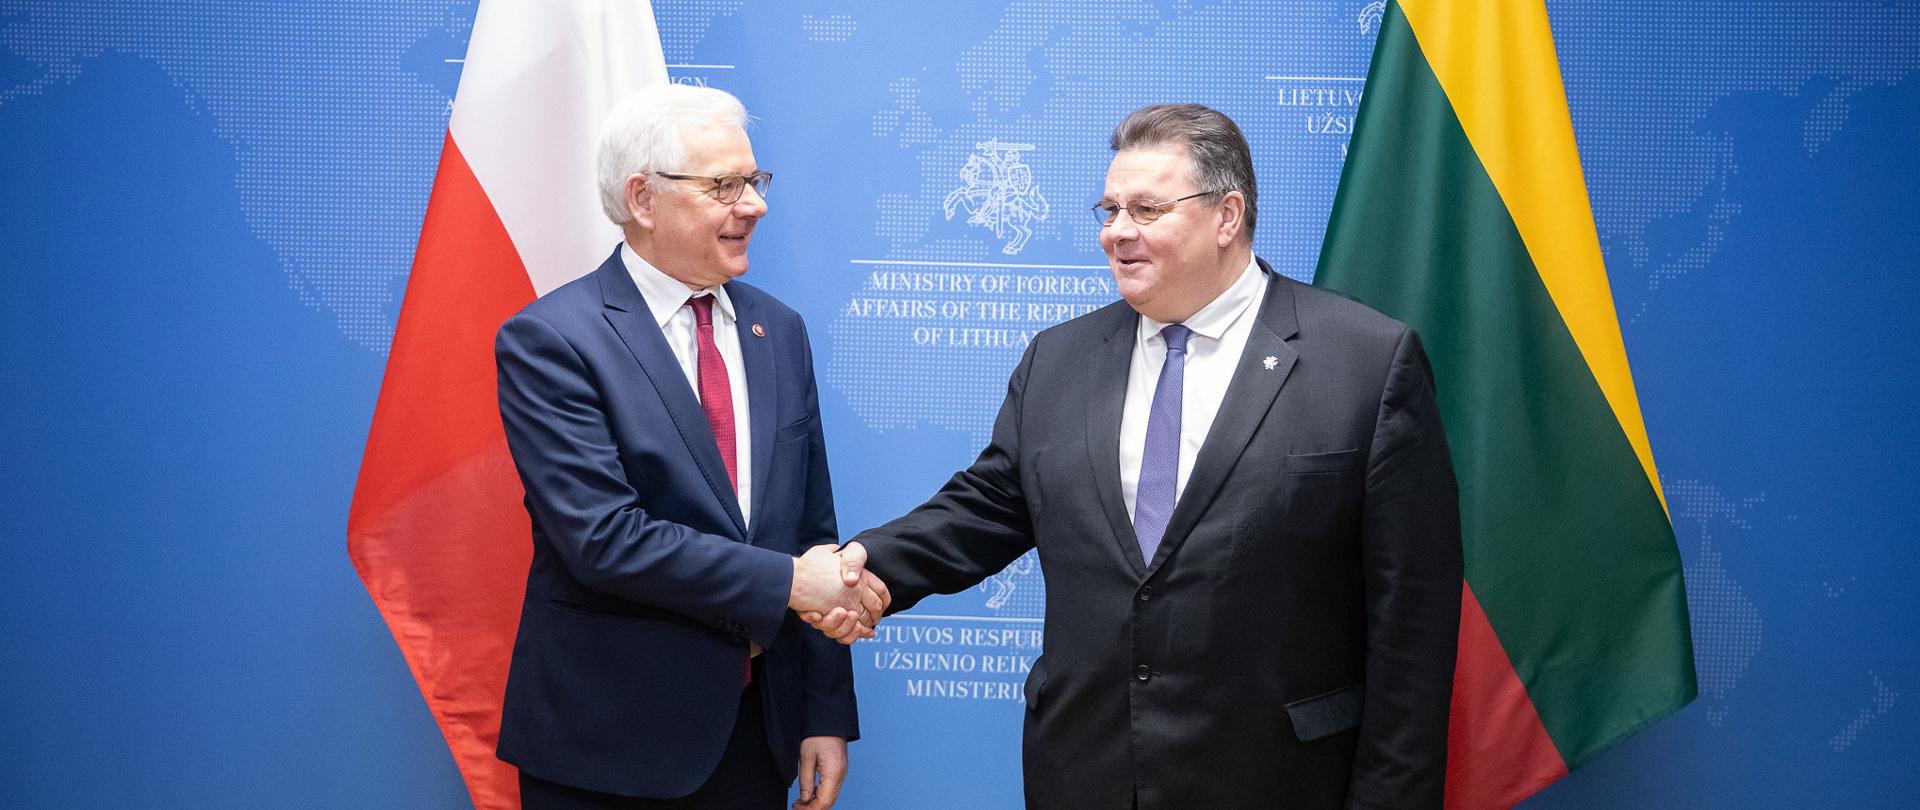 Minister Jacek Czaputowicz visits Lithuania